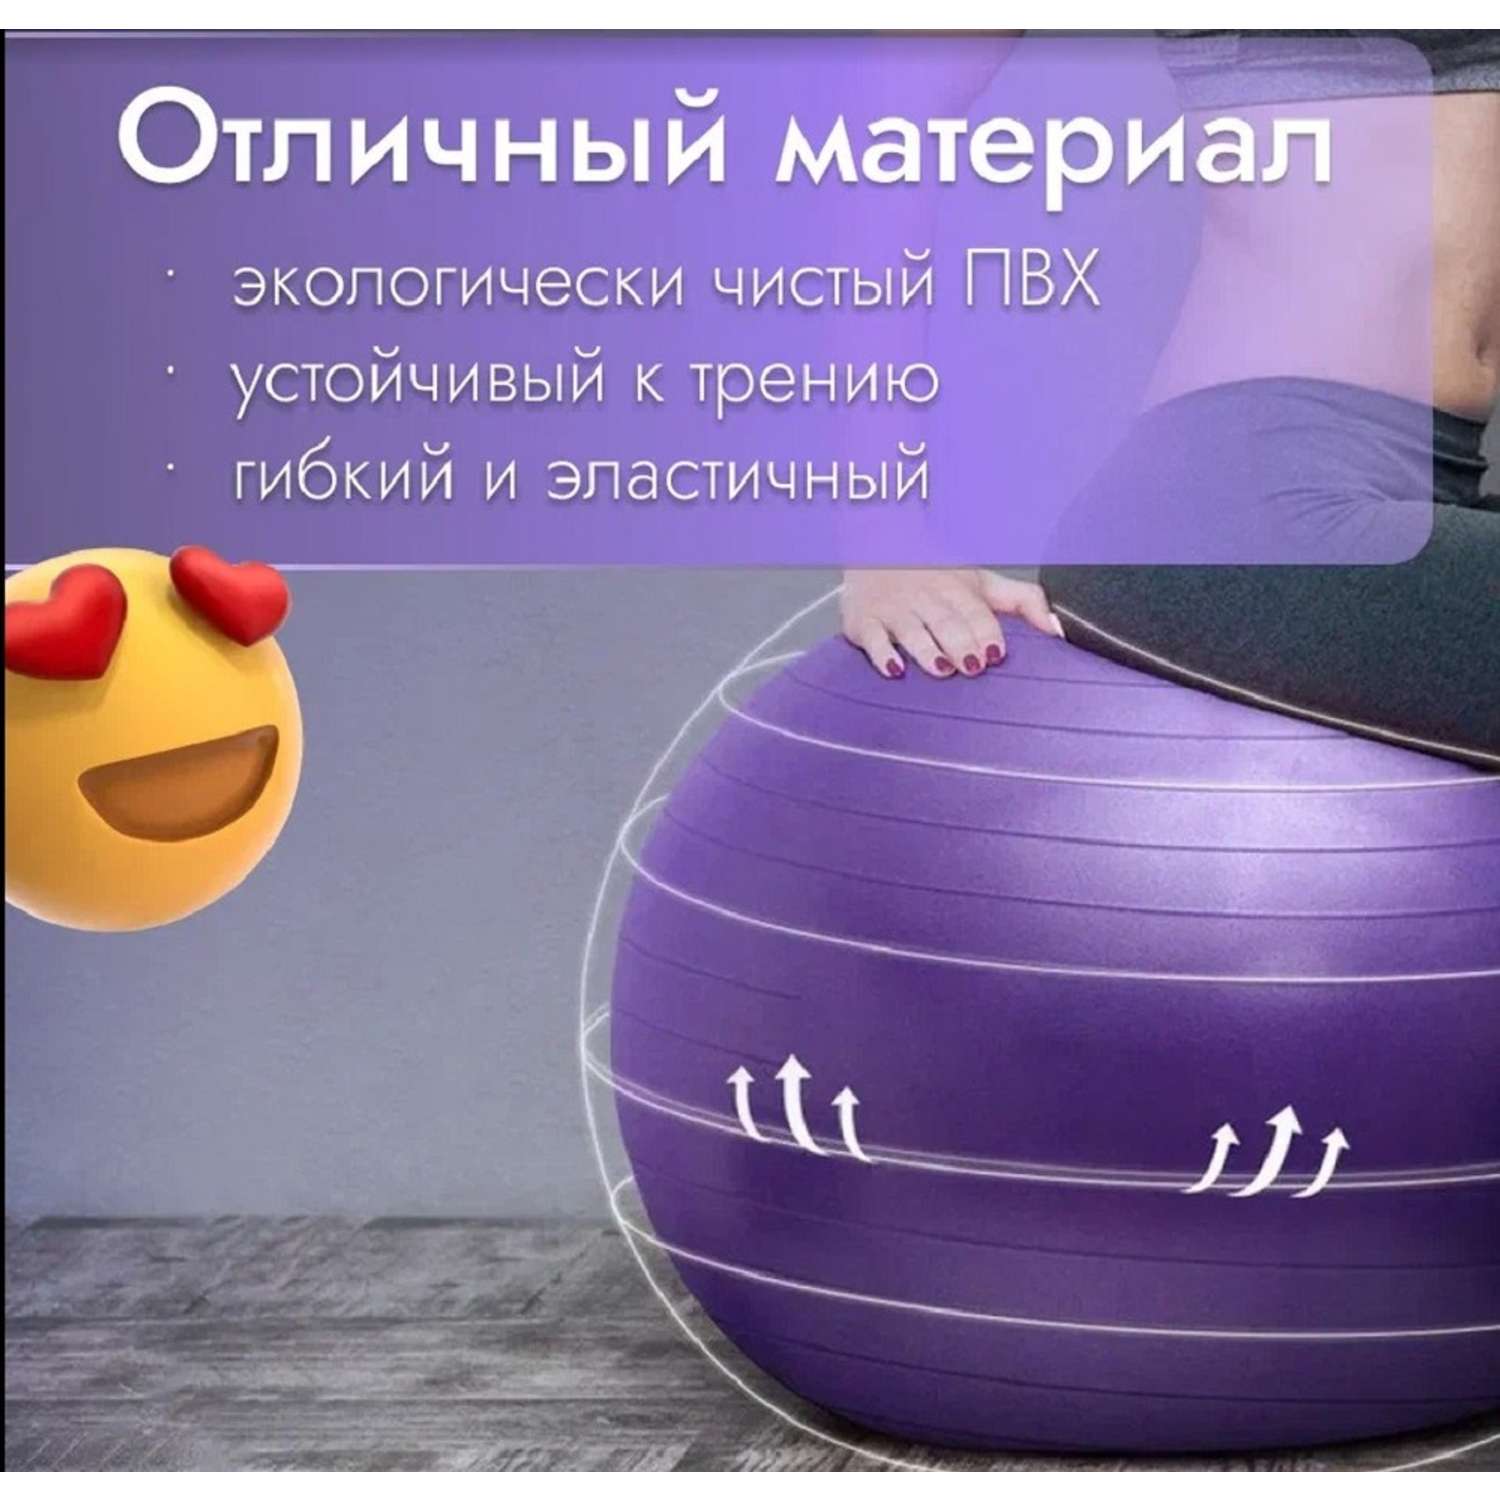 Мяч Nonstopika ZDK надувной для йоги цвет фиолетовый - фото 4